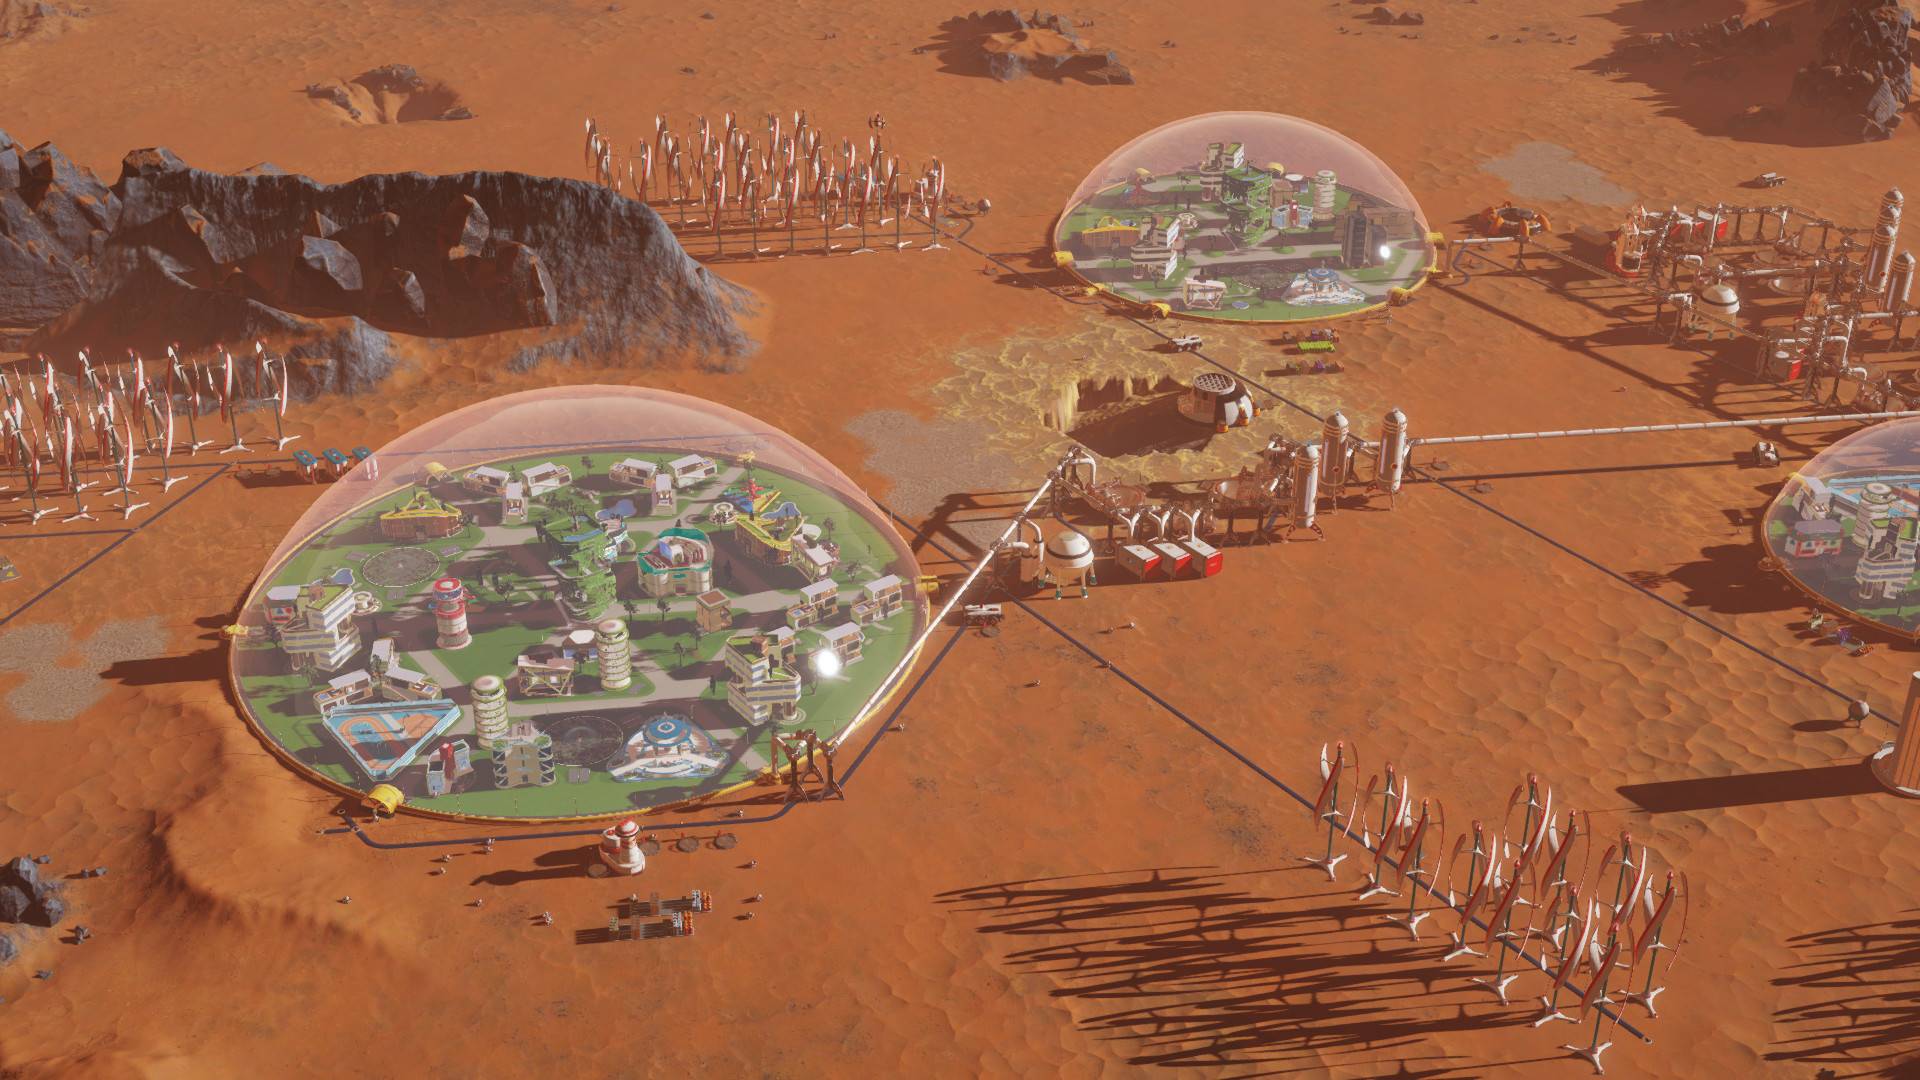 بہترین شہر بنانے والے کھیل: زندہ بچ جانے والے مریخ۔ تصویری بائیوسفیرس کے اندر مریخ پر دو بستیوں کو دکھاتی ہے۔